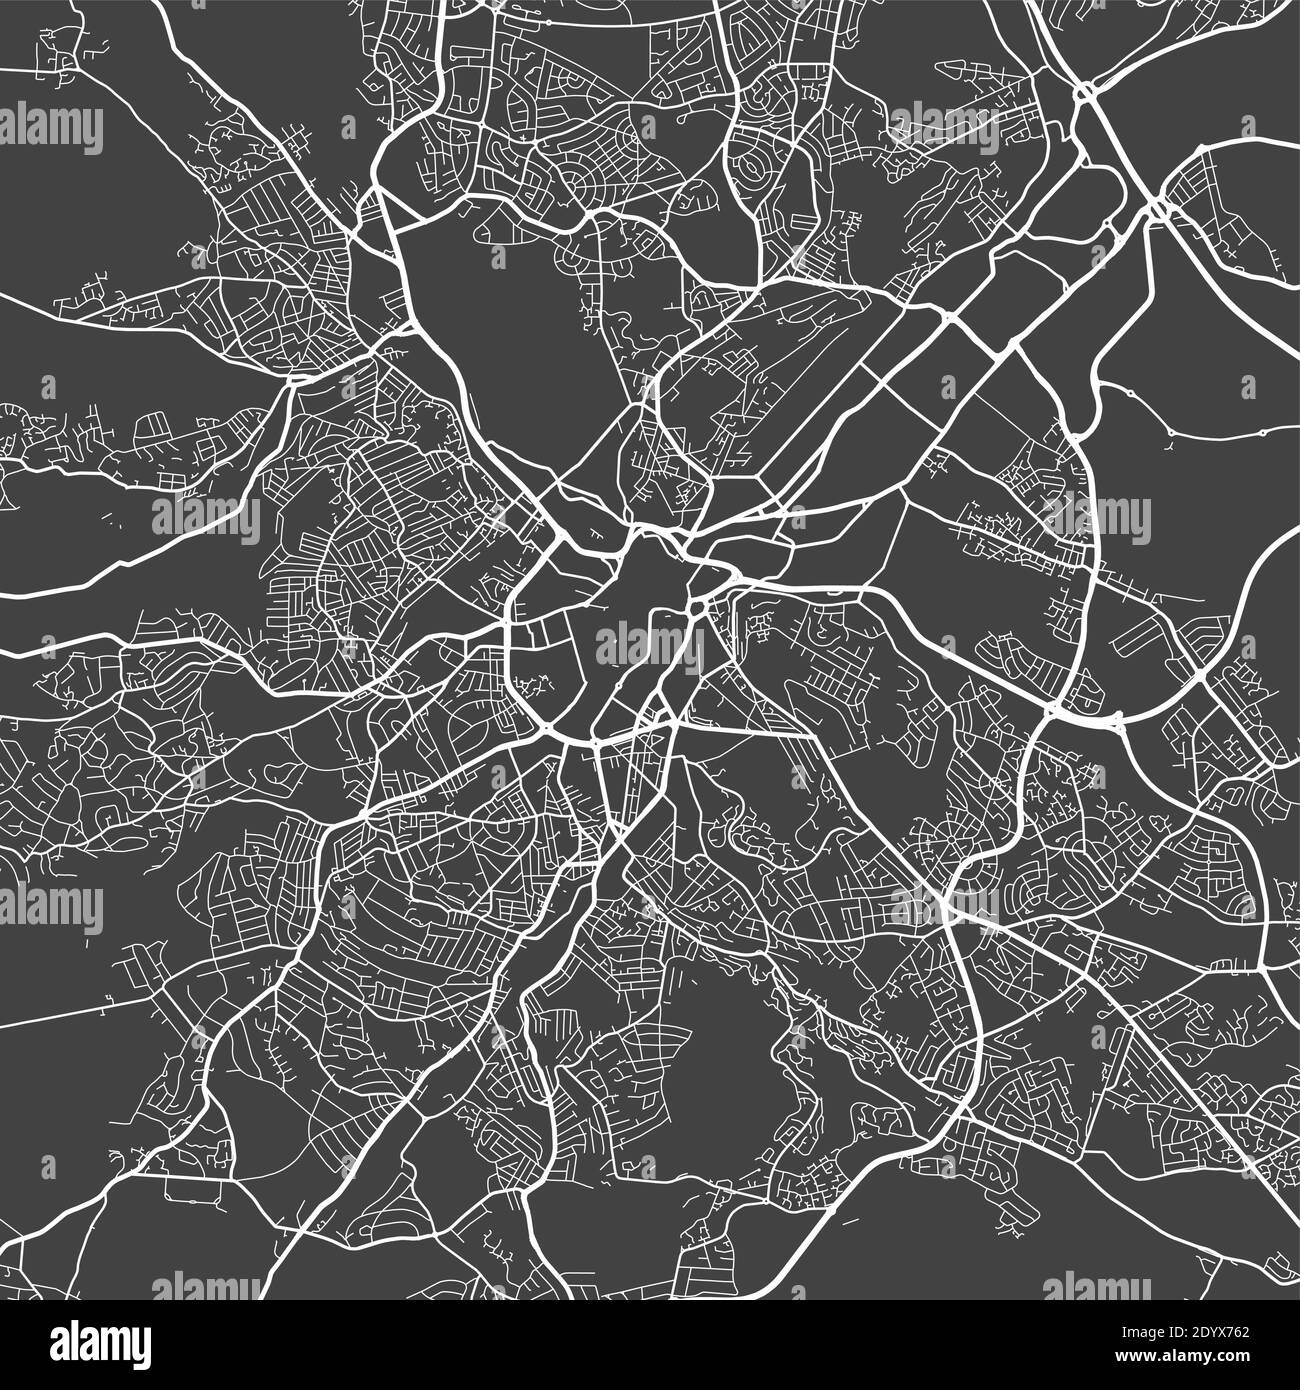 Mappa urbana di Sheffield. Illustrazione vettoriale, poster a scala di grigi della mappa di Sheffield. Immagine della mappa stradale con strade, vista dell'area metropolitana. Illustrazione Vettoriale